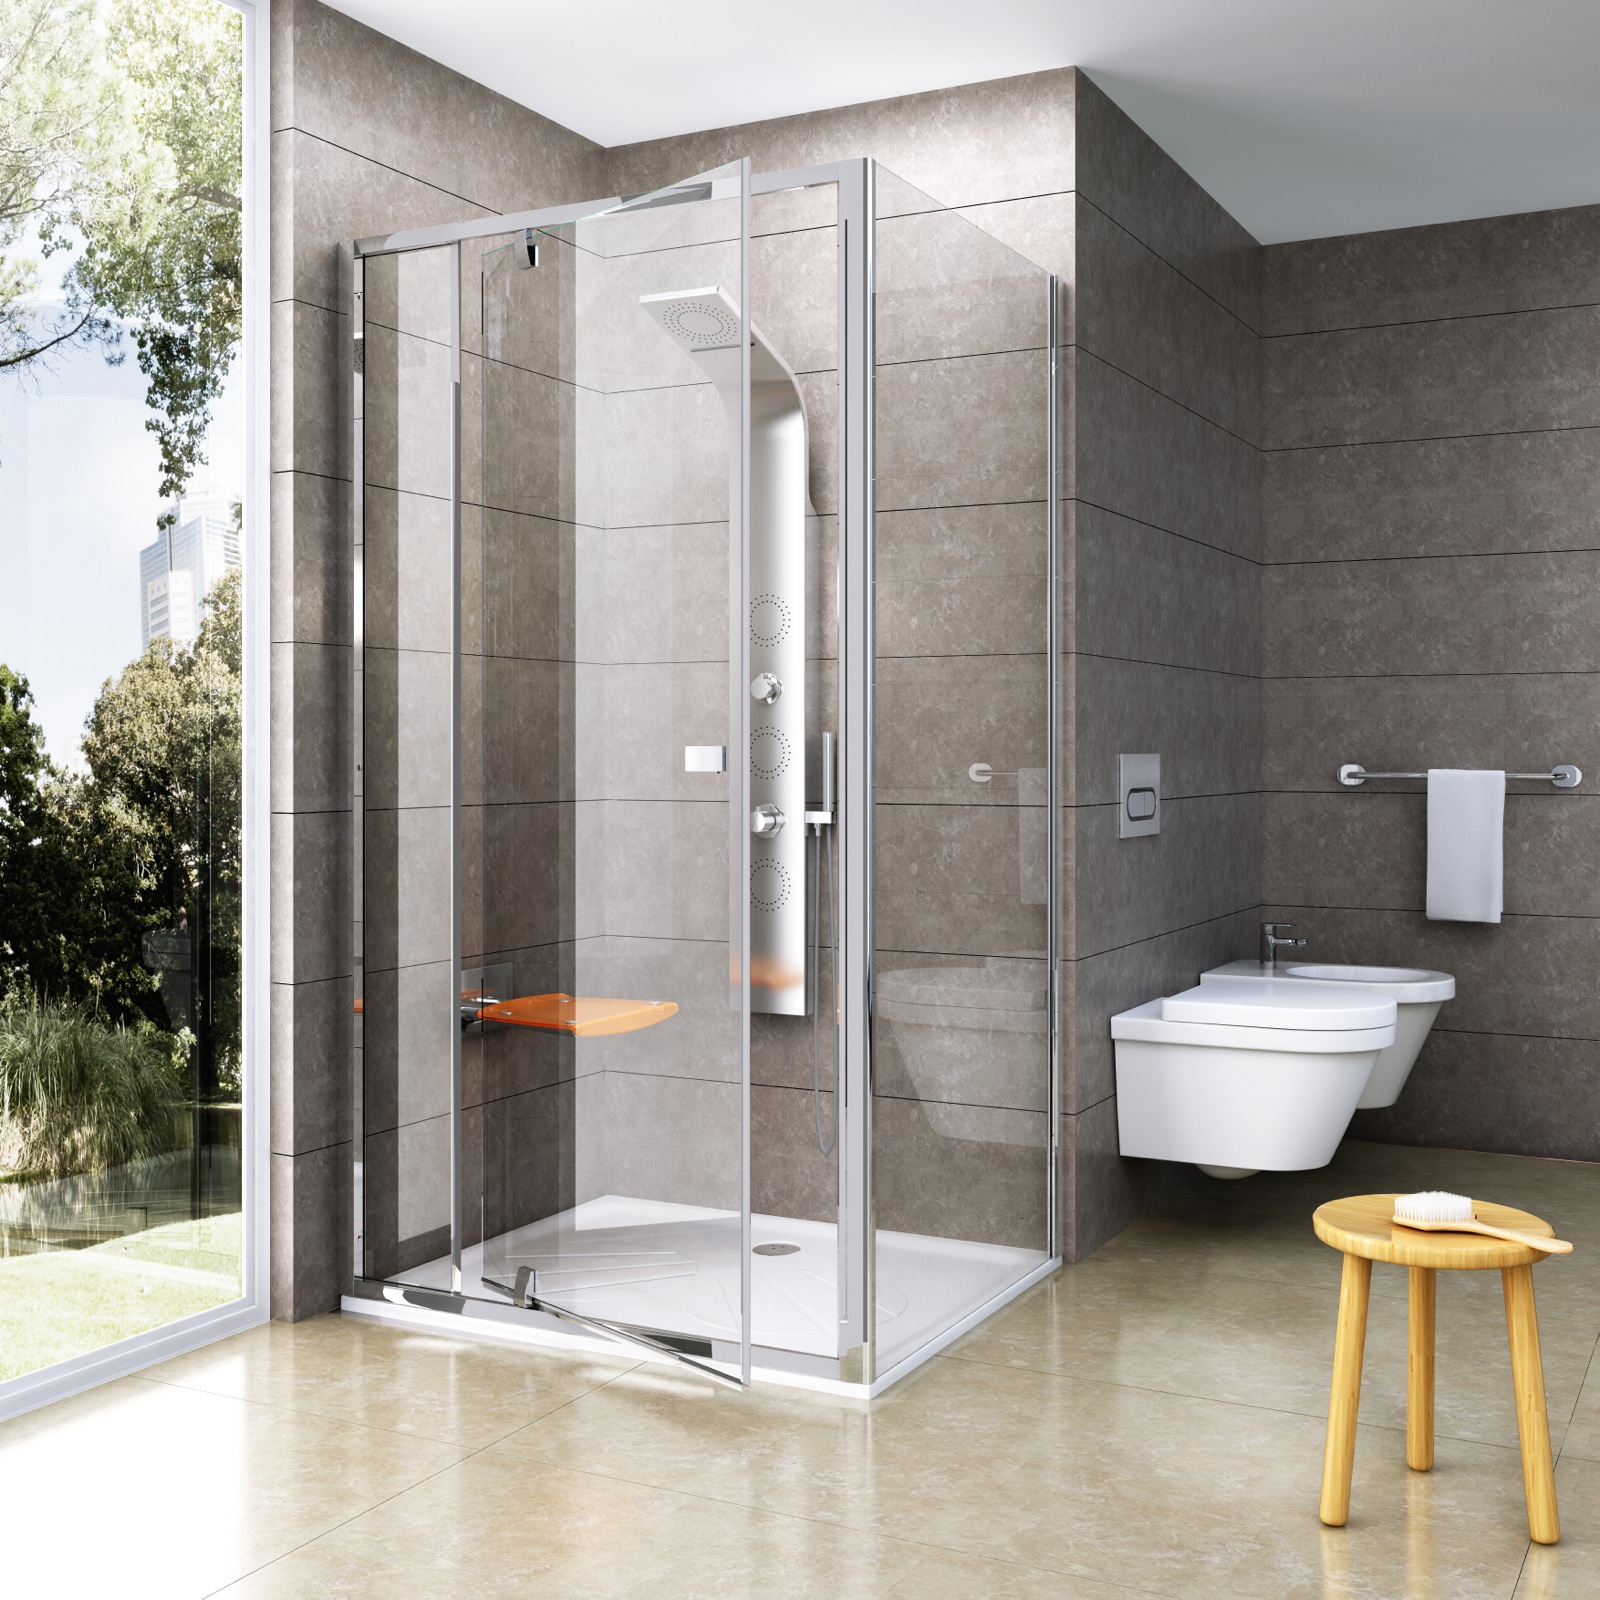 A Pivot zuhanykabinok egyszerűségét látványos üvegfelületek emelik nagyszerűvé. Ilyen egy modern, szerethető fürdőszoba!